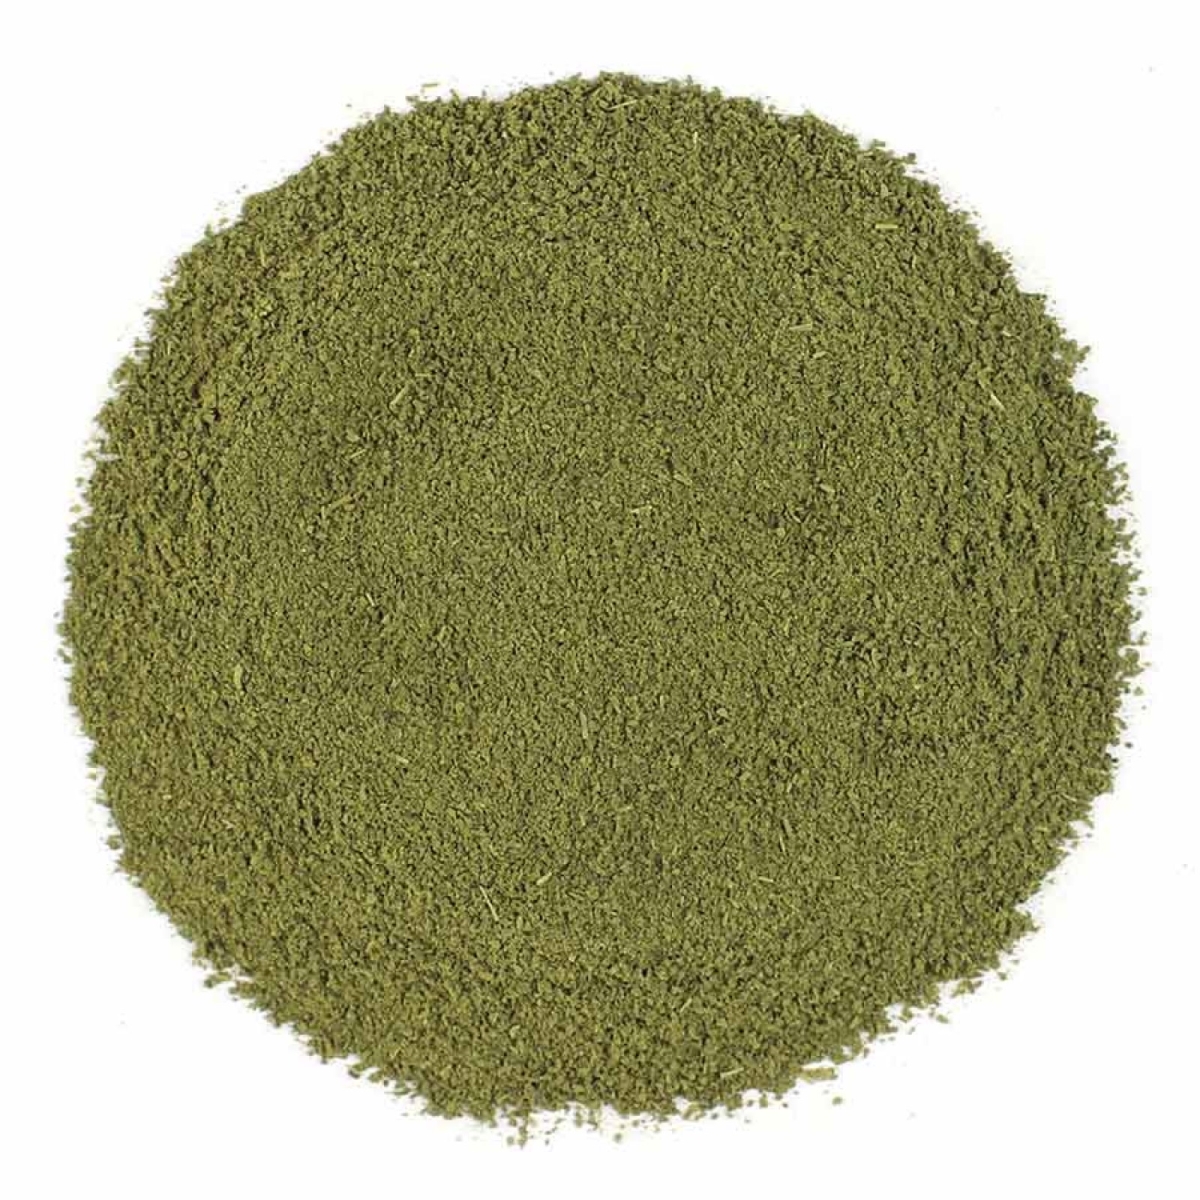 Picture of Frontier Bulk 4885 16 oz Organic Moringa Powder Seasoning Blend